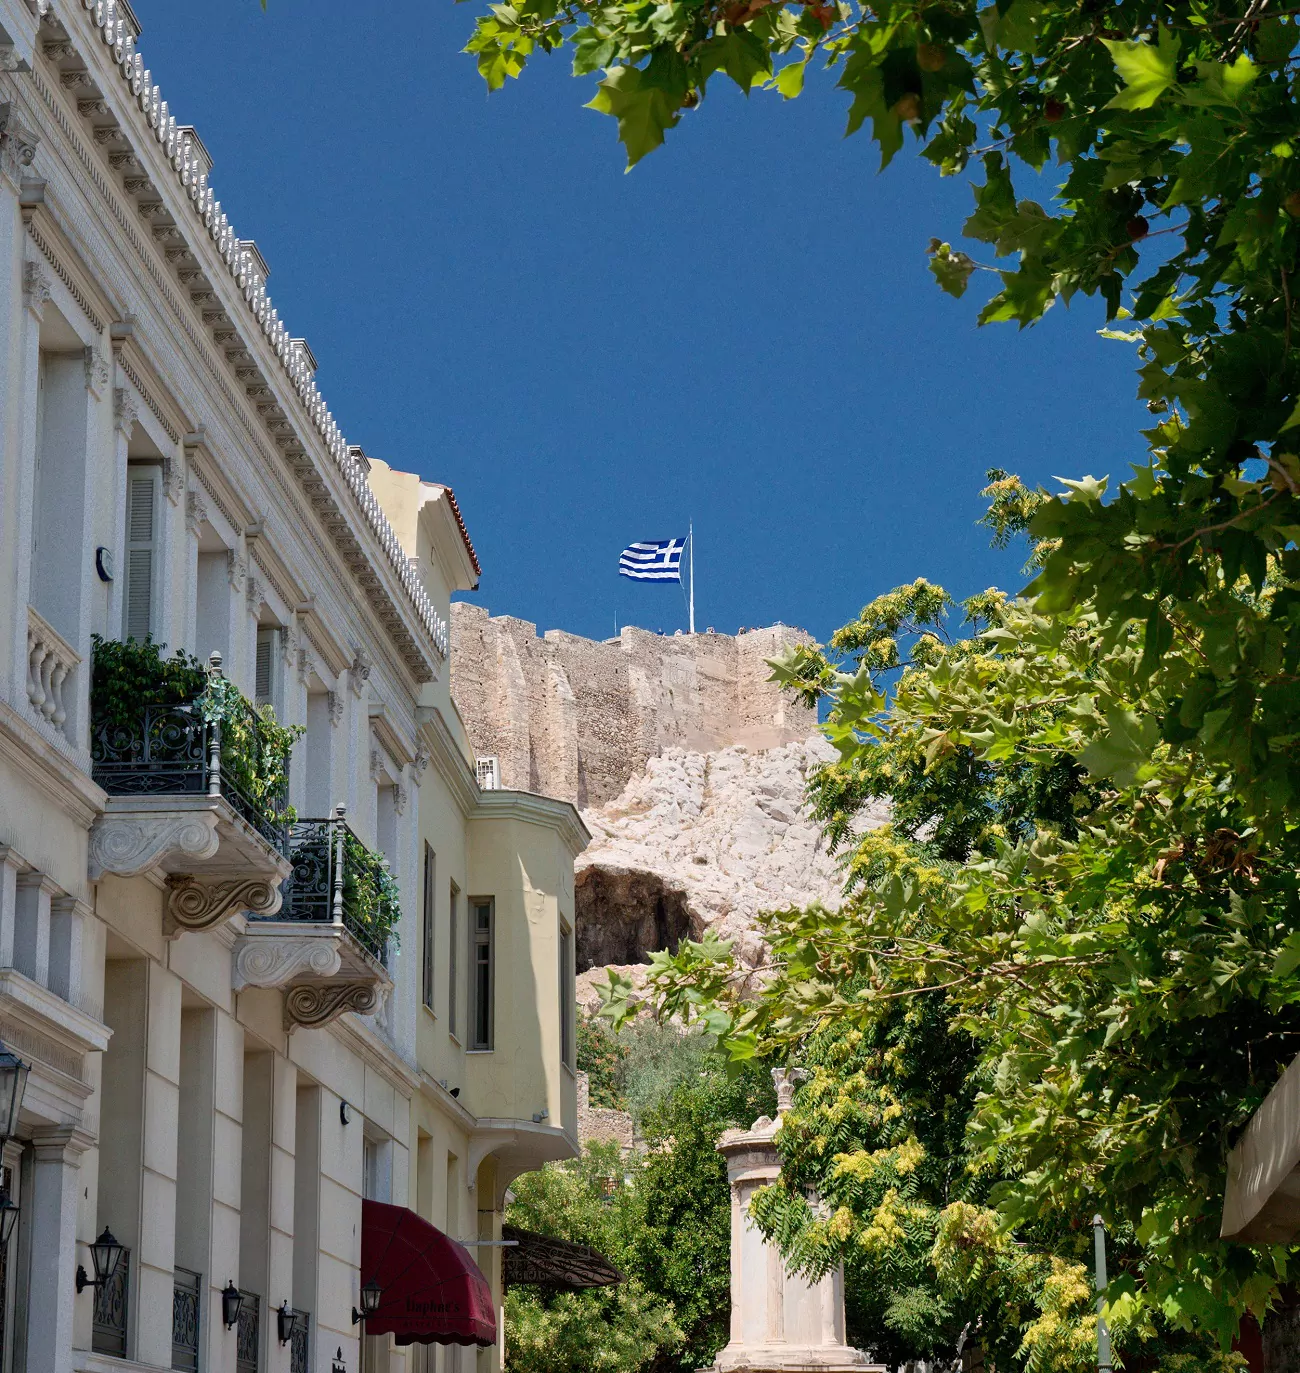 Ελληνική σημαία: Οι συμβολισμοί που κρύβει